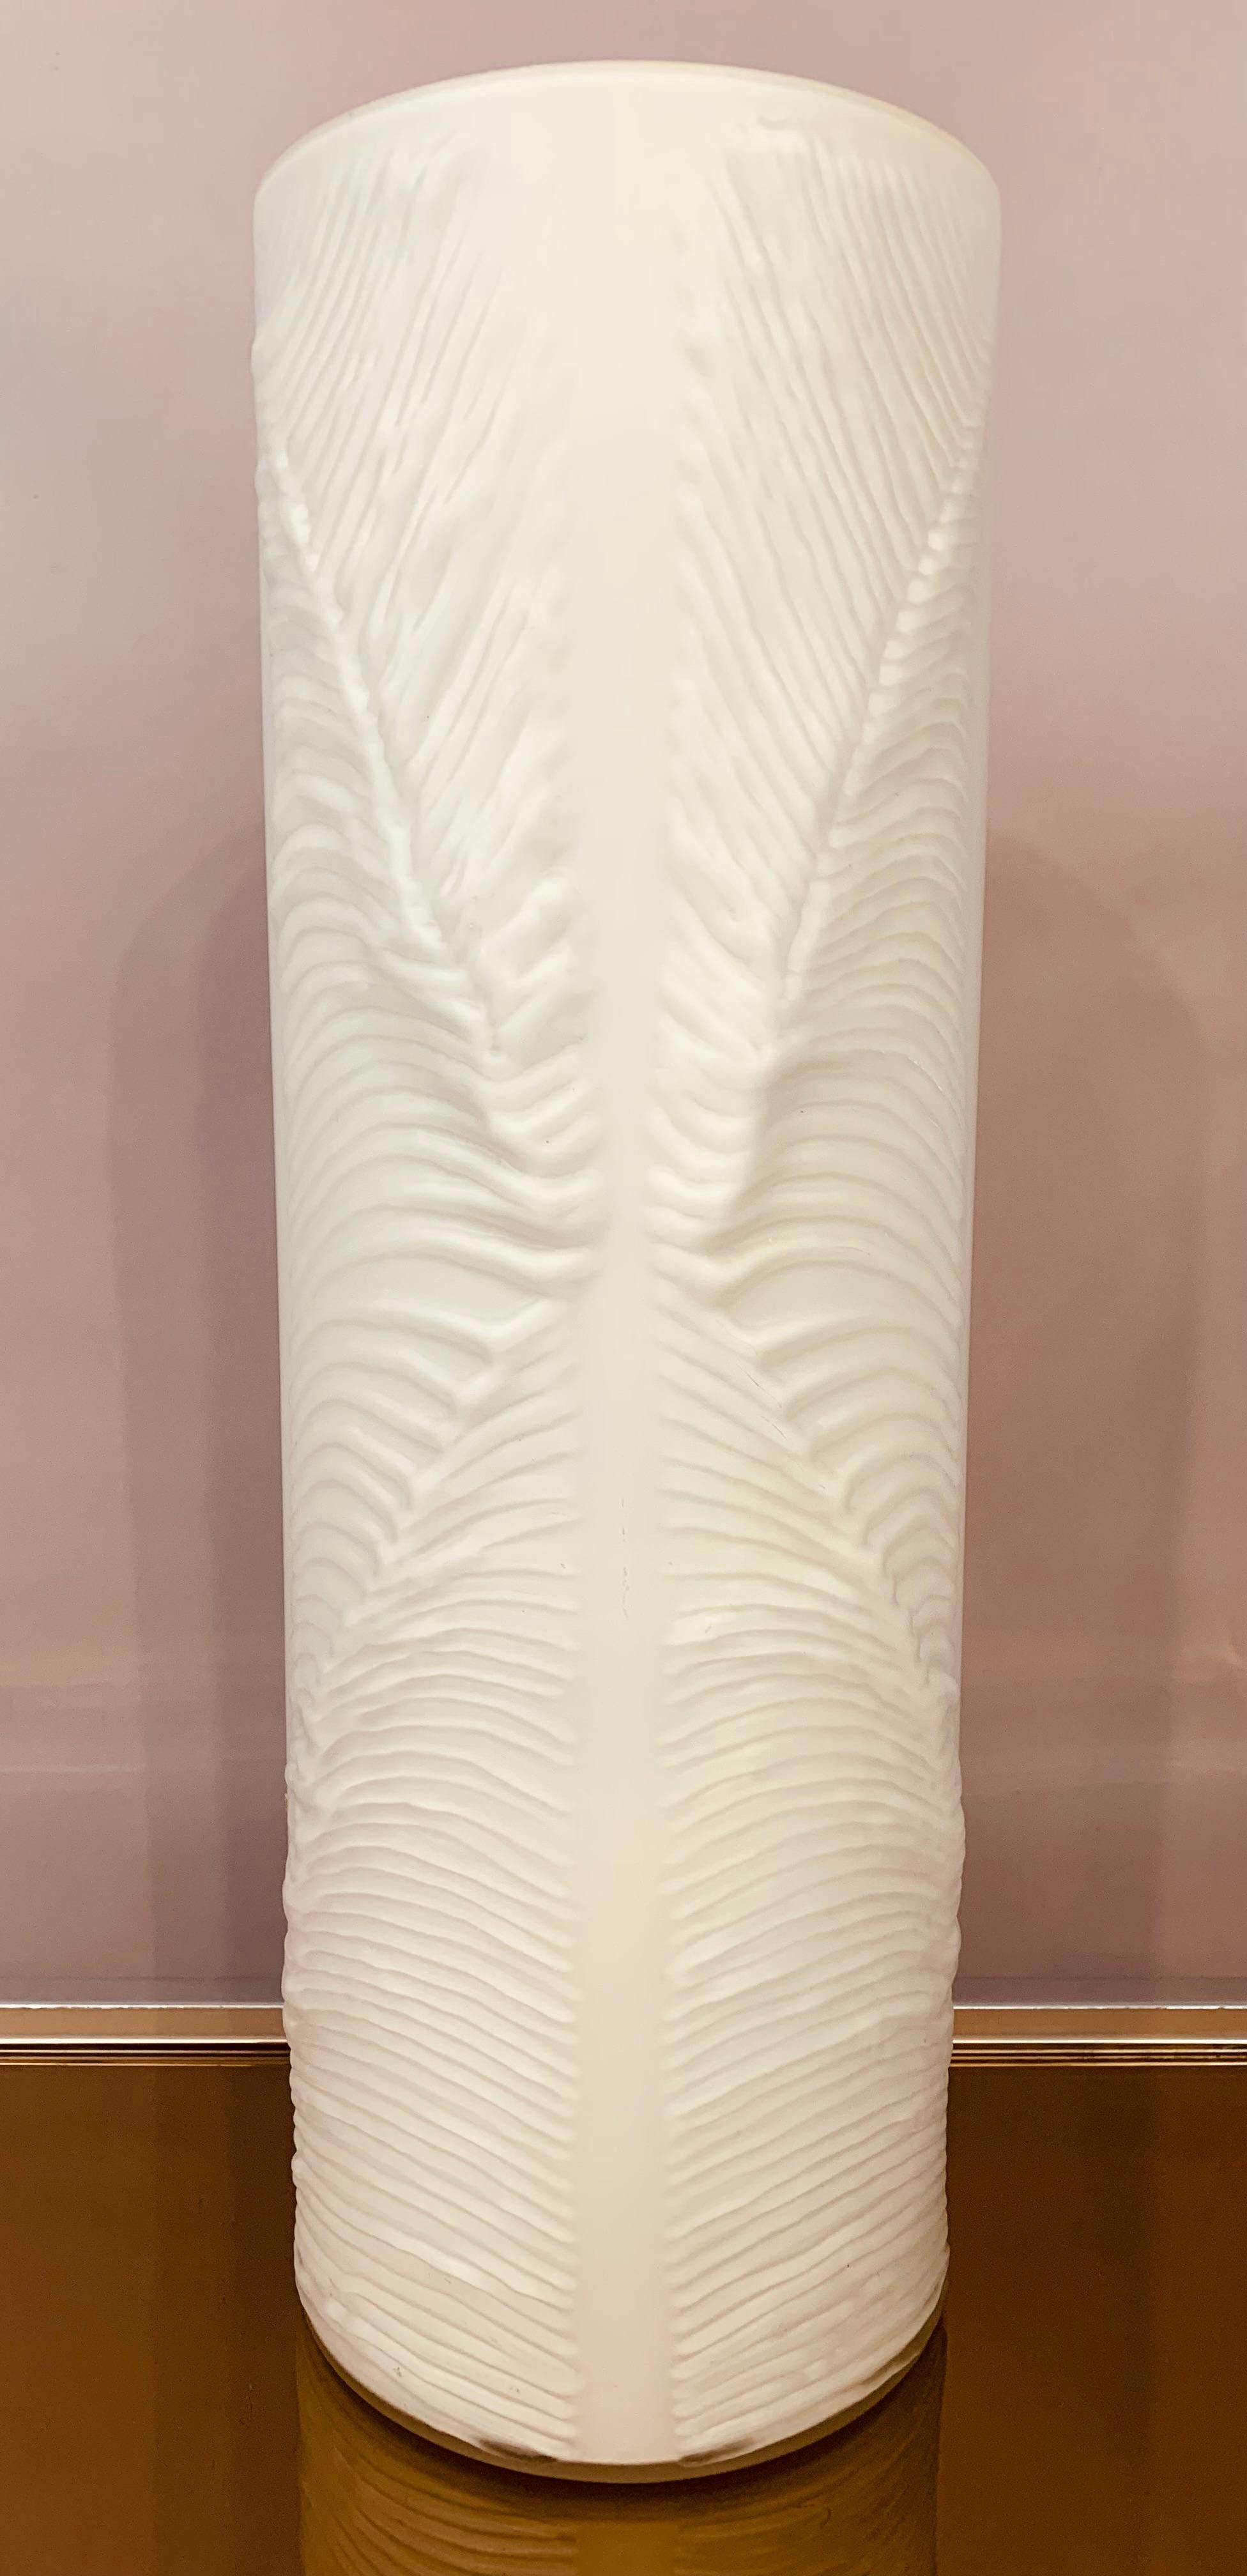 1970er Jahre Deutsche Peill & Putzler hohe zylindrische weiße Vase mit Klarglas ummantelt. Die matte Glasvase hat ein wunderschönes 3-dimensionales 